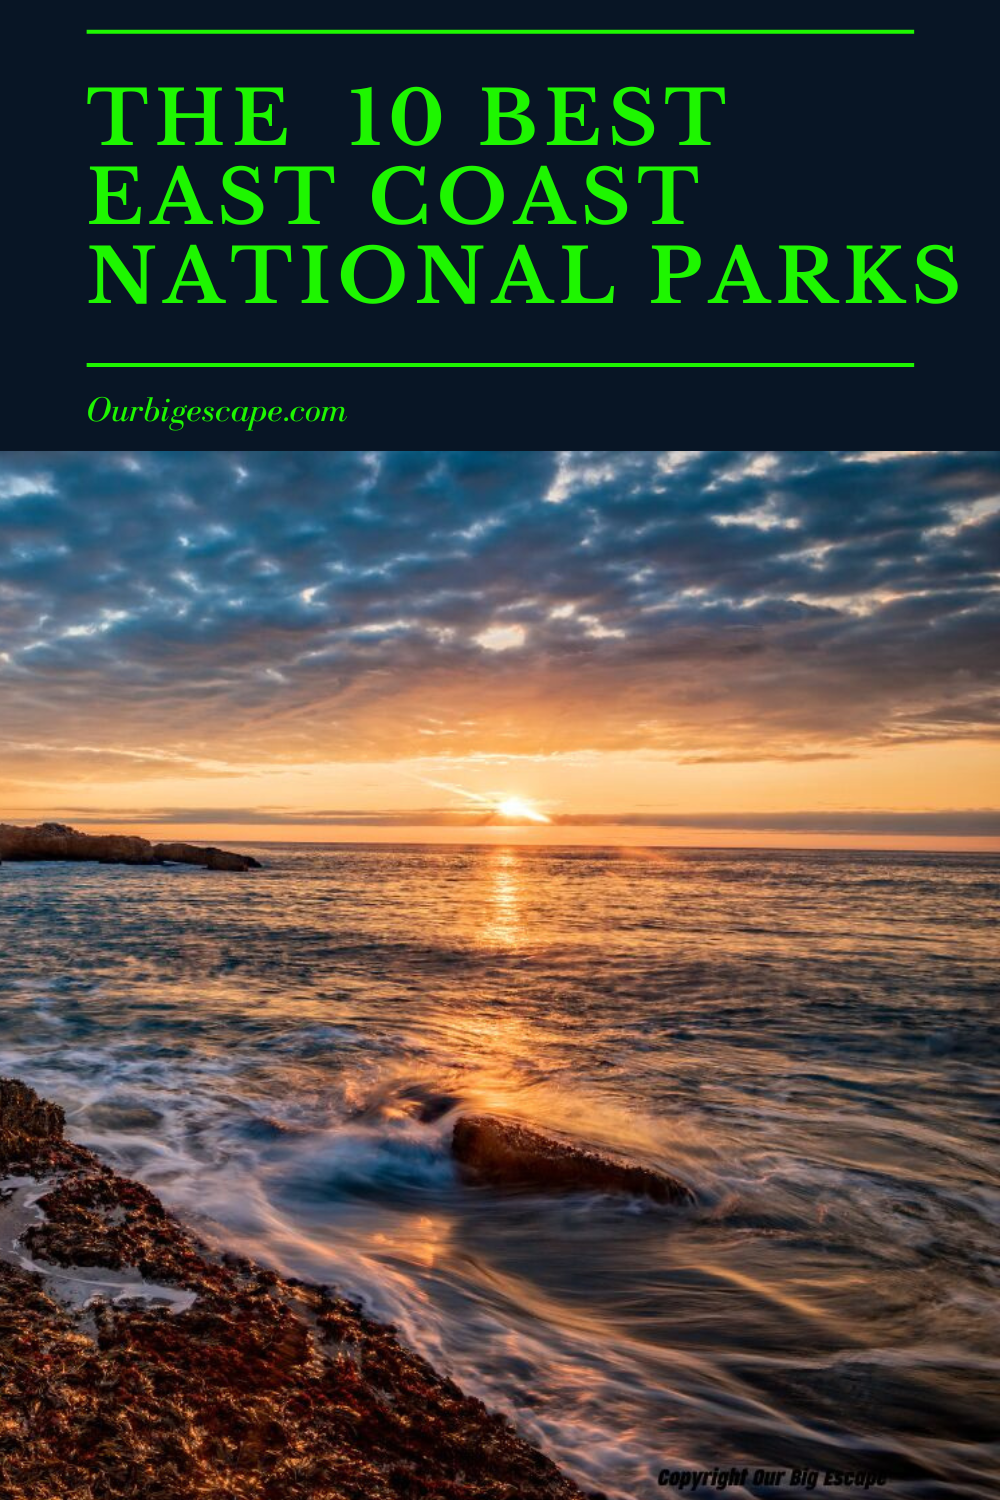 East Coast National Parks (19)